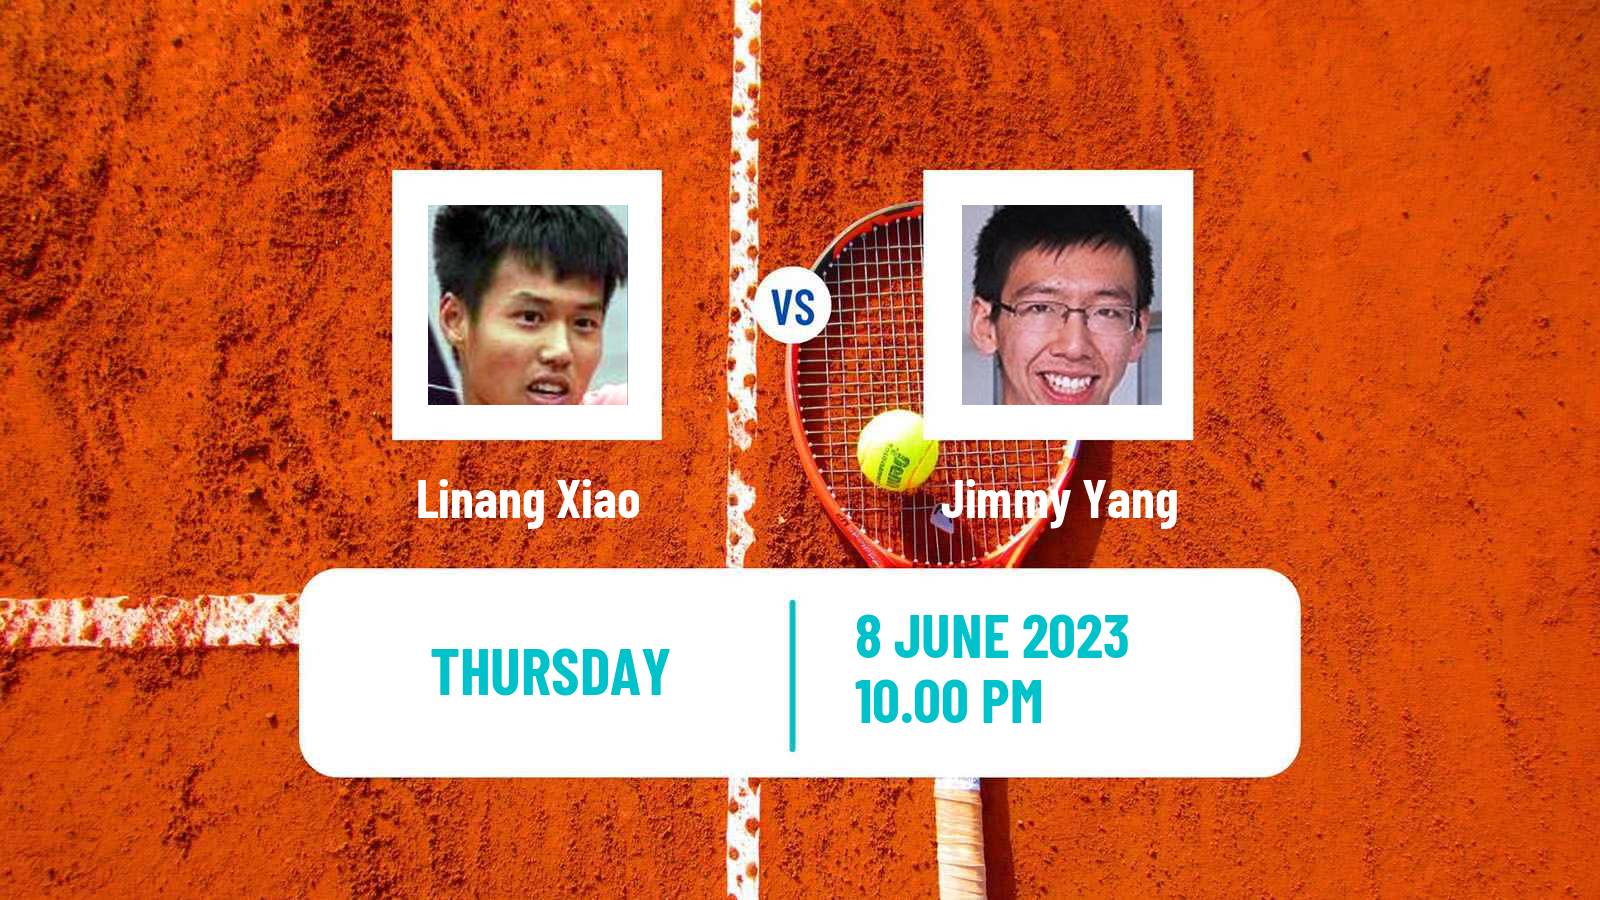 Tennis ITF M25 Luzhou Men Linang Xiao - Jimmy Yang